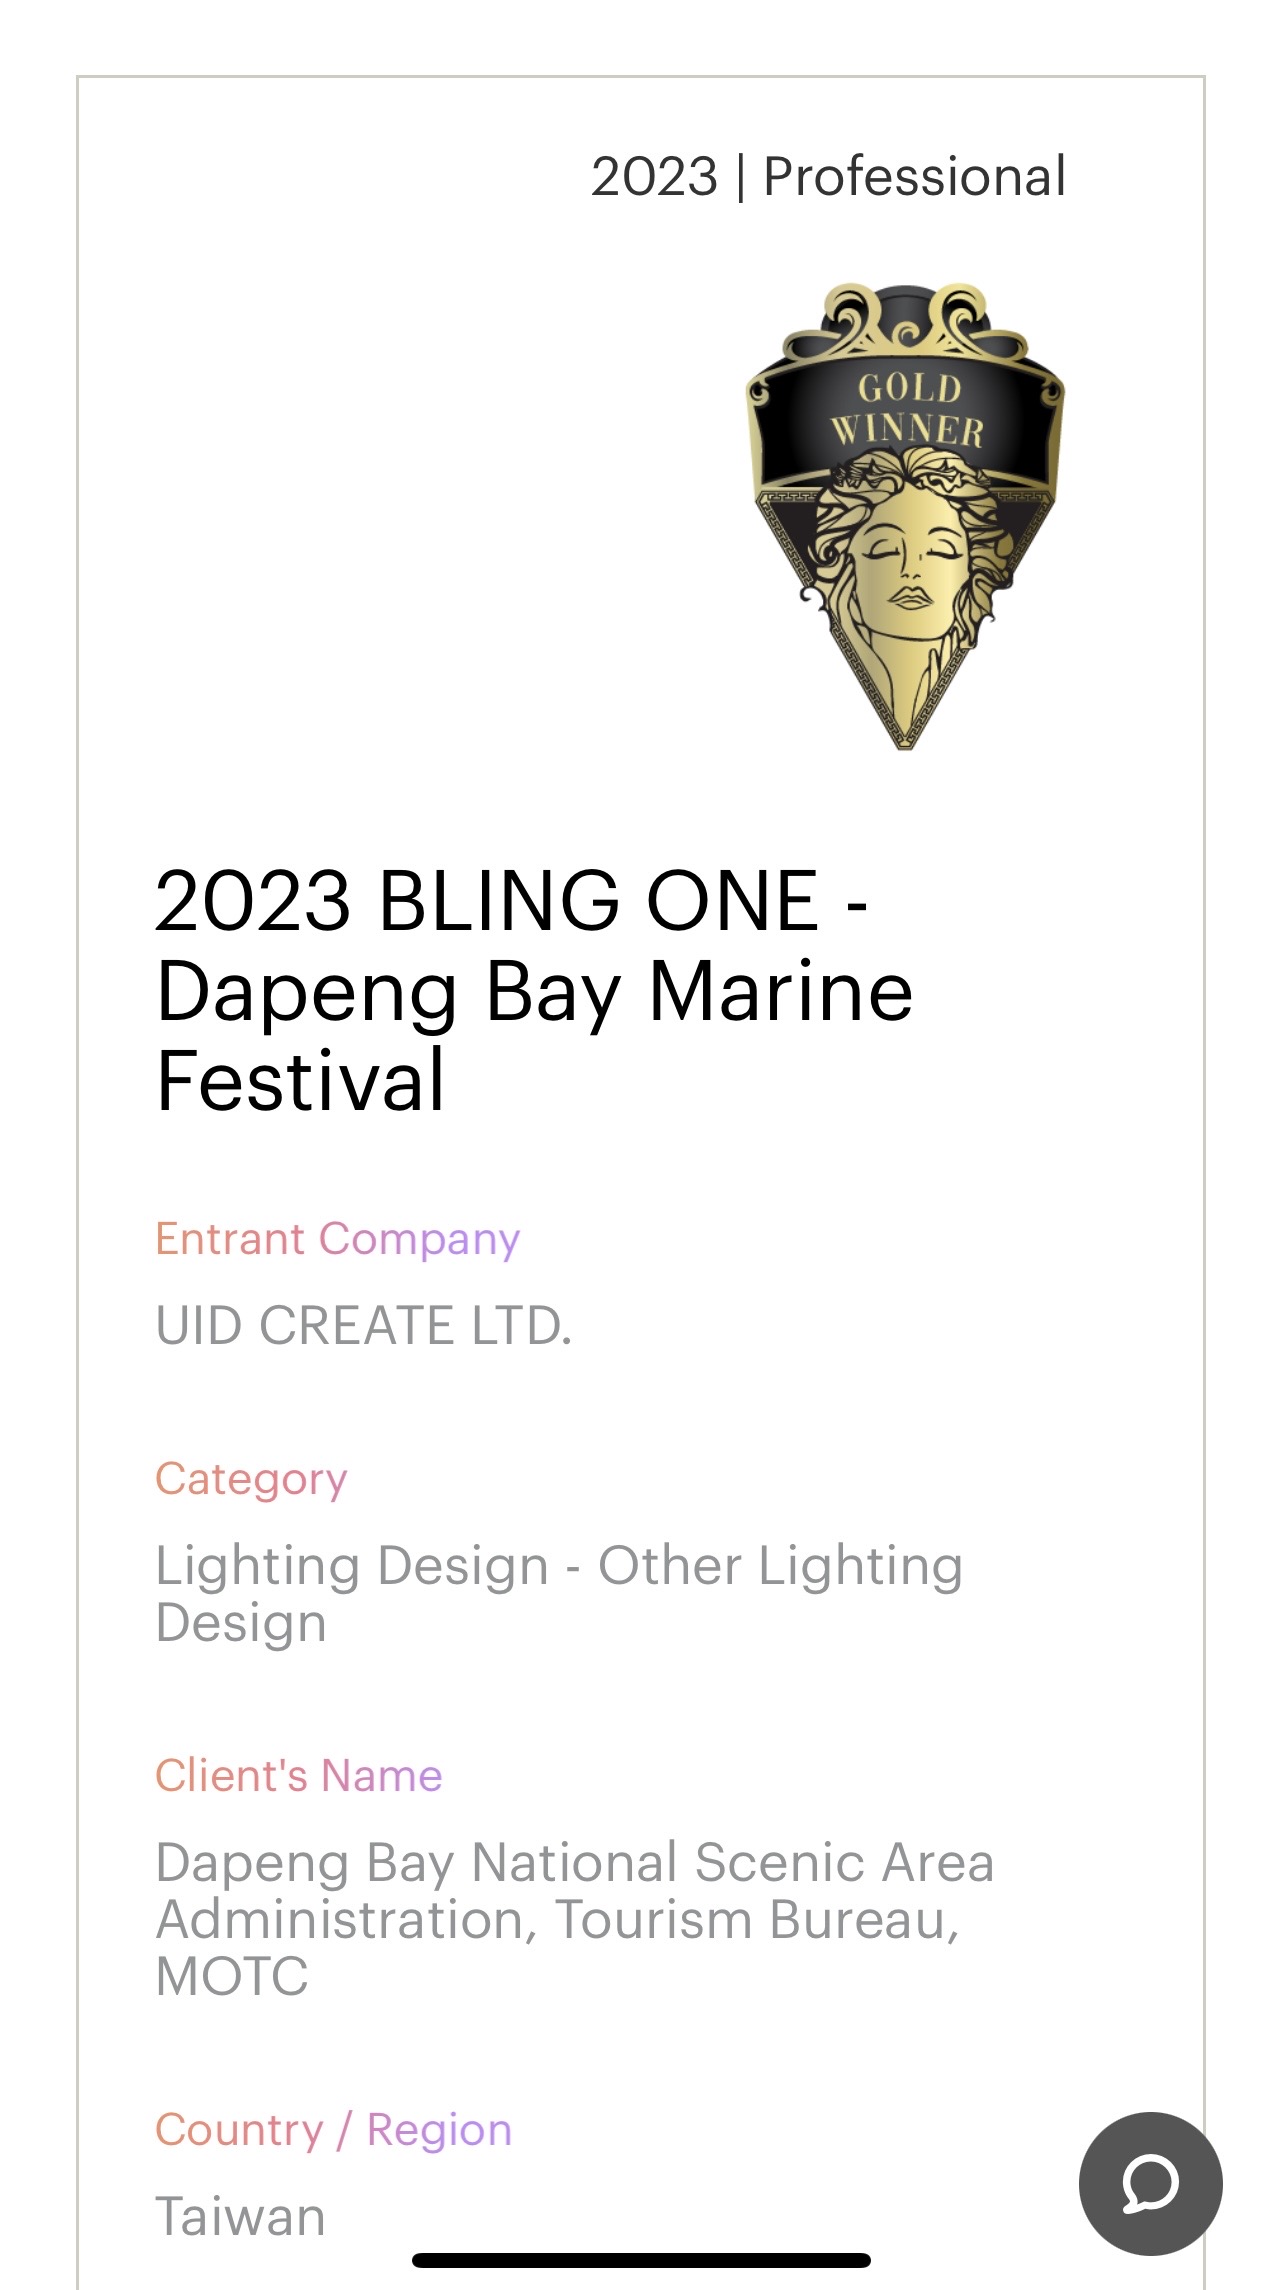 MUSE Design Award: Gold Winner | 2023 BLING ONE - Dapeng Bay Marine Festival